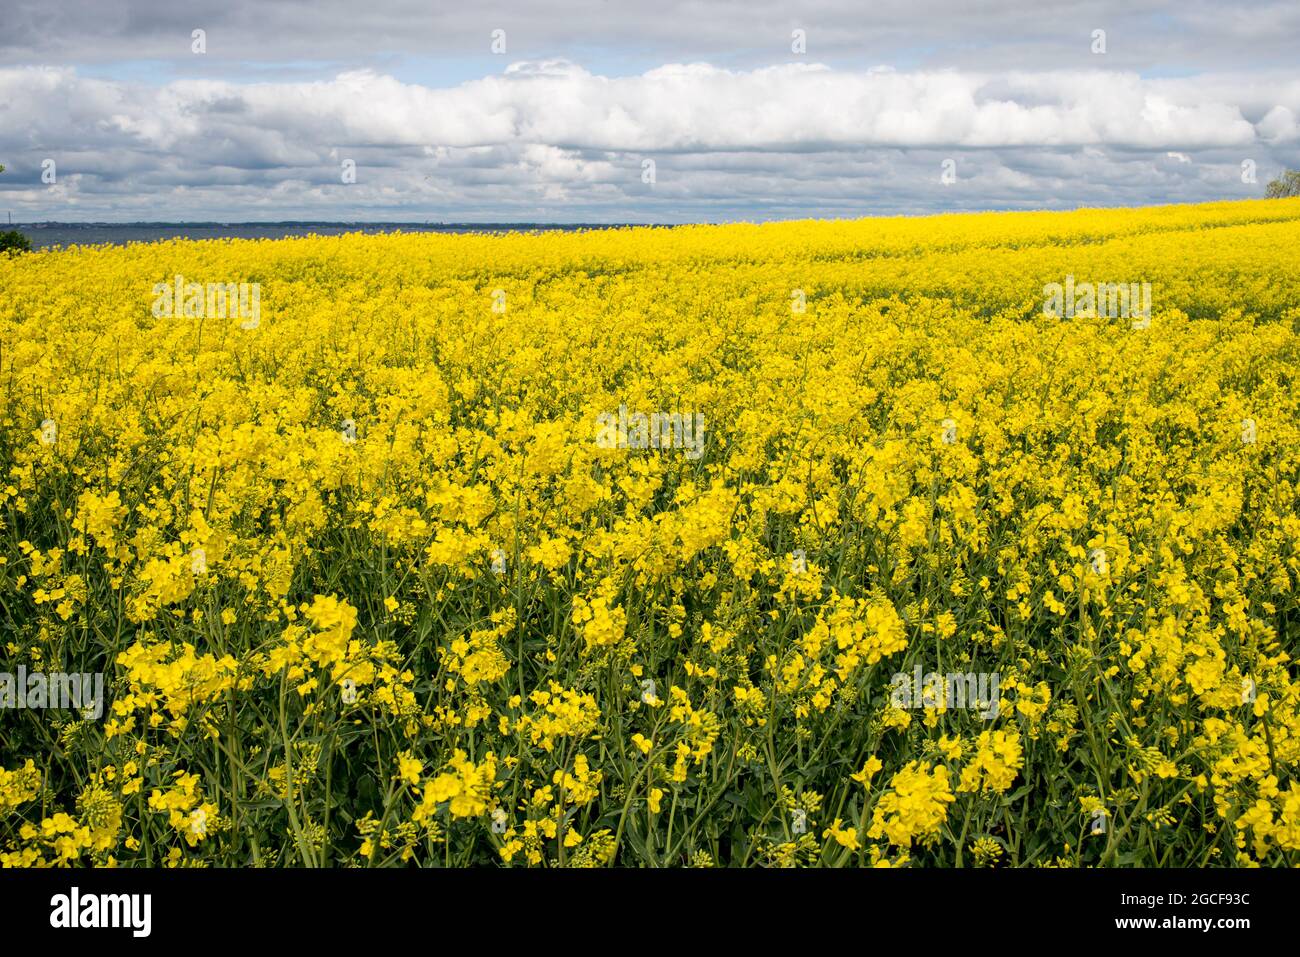 Hermoso paisaje en la isla Ven en el Øresund entre Dinamarca y Suecia en mayo con un campo de flores amarillas de colza Foto de stock